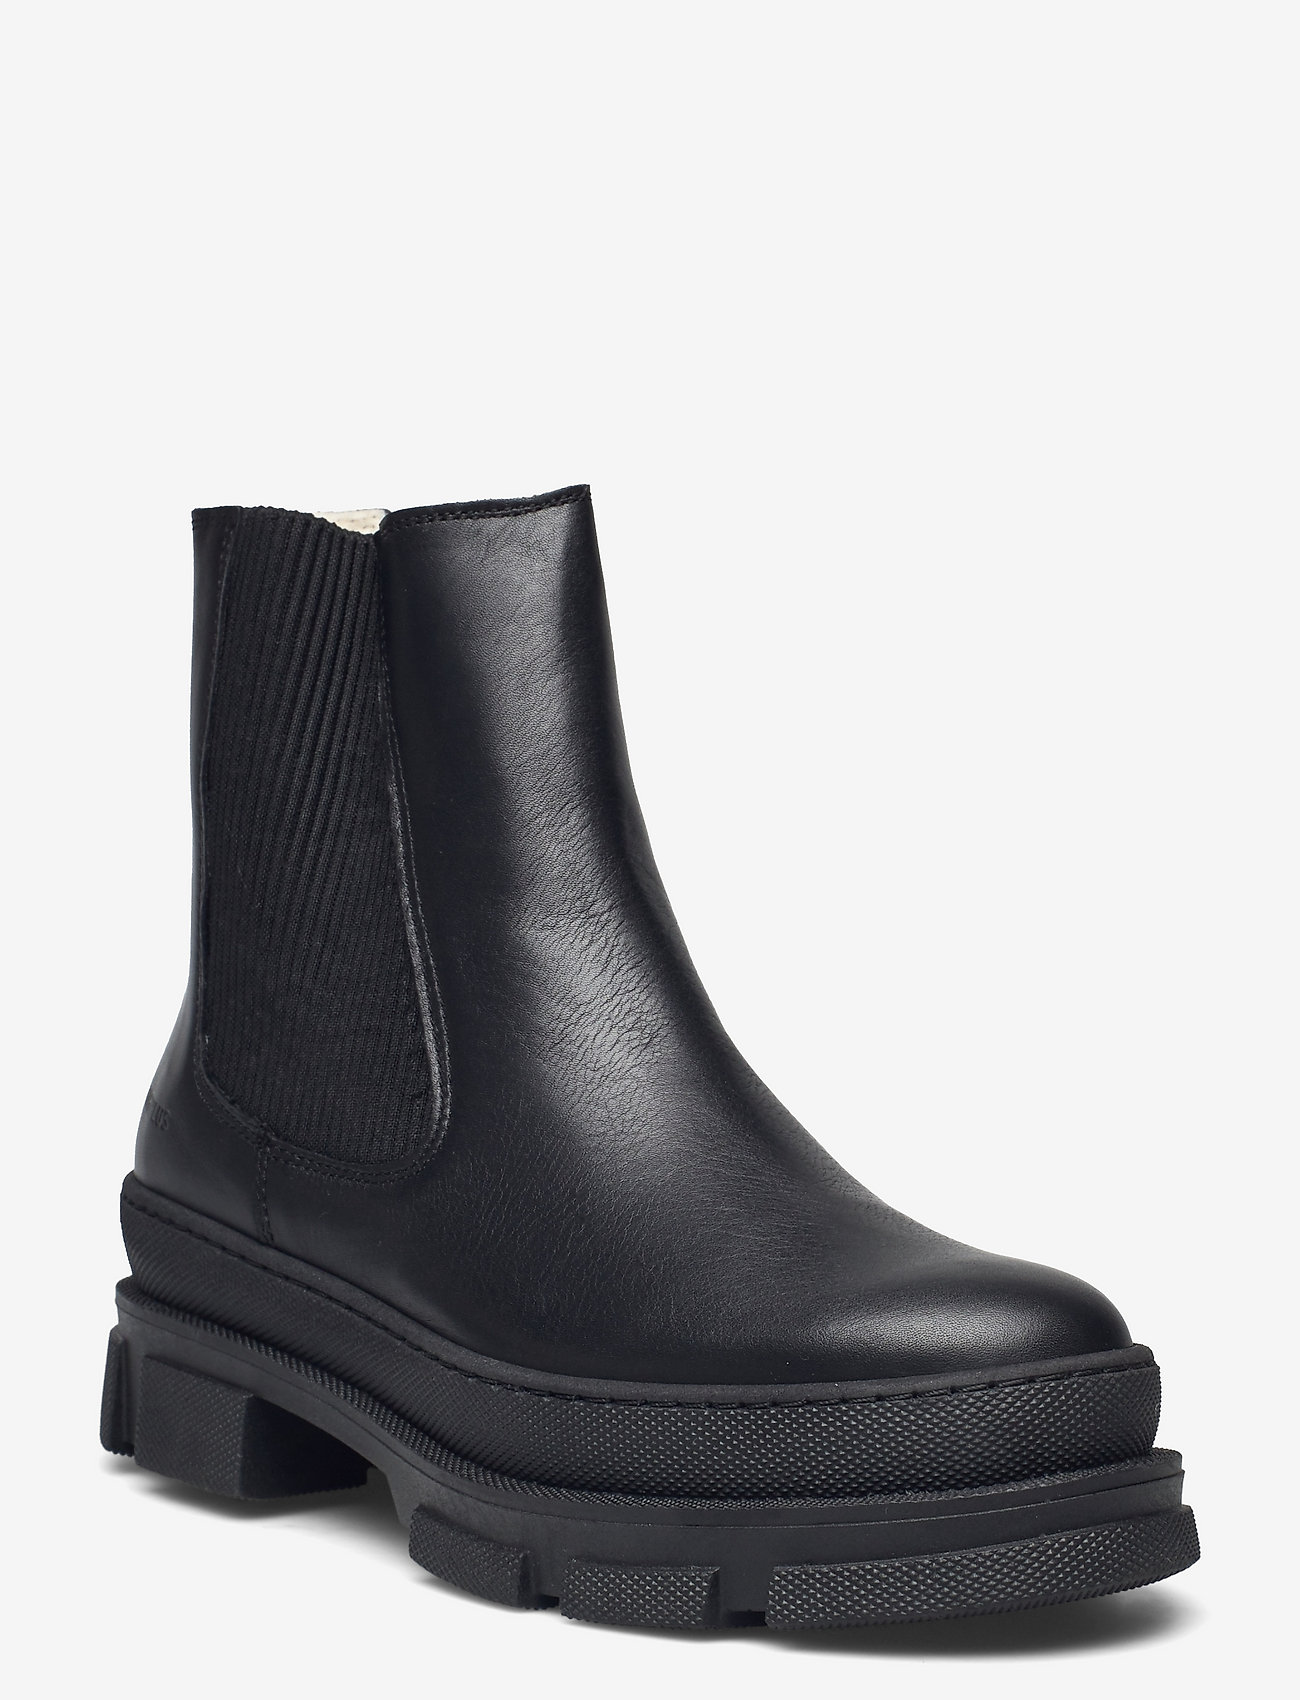 ANGULUS - Boots - flat - chelsea-saapad - 1604/019 black/black - 0